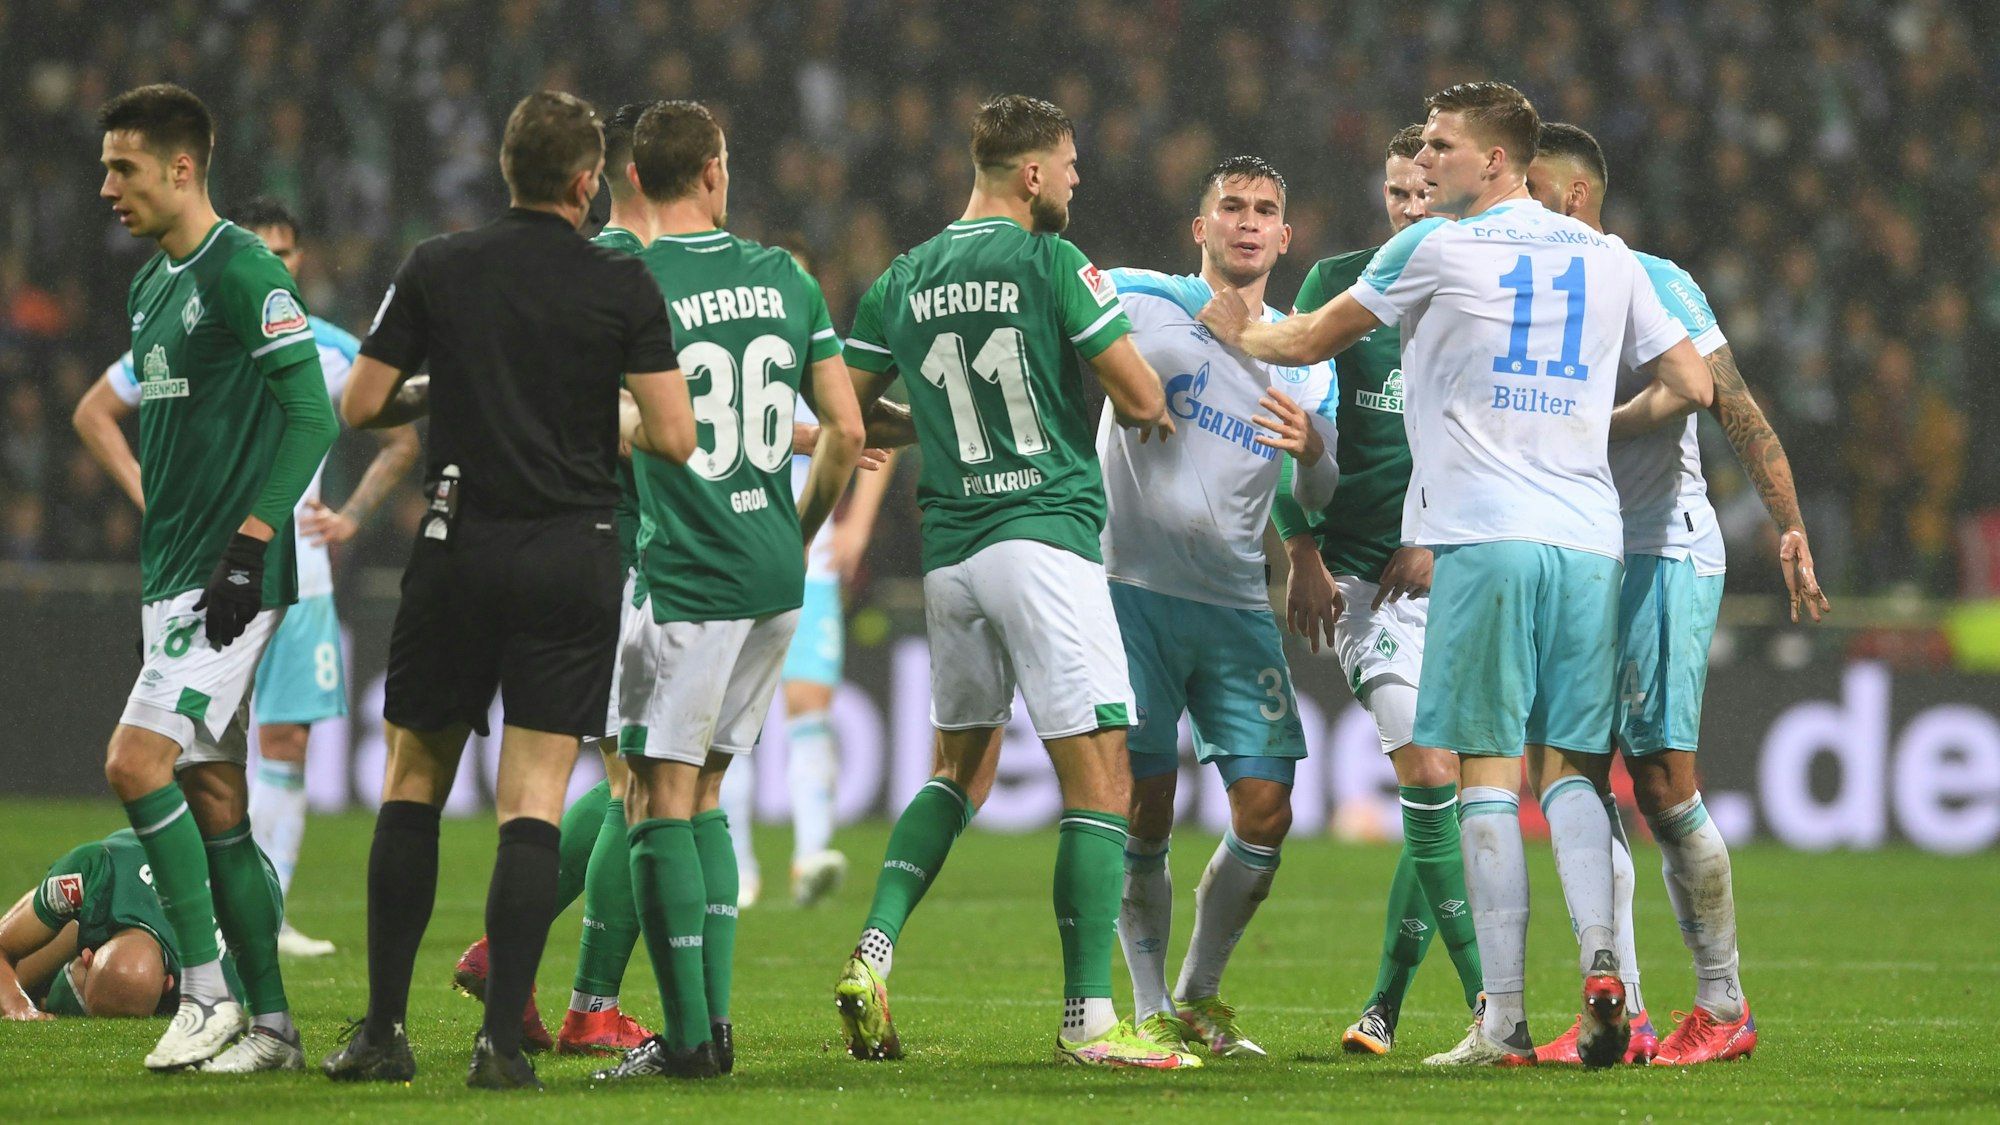 Nach einem Foul an Werders Ömer Toprak gibt es eine Auseinandersetzung zwischen den Spielern, vor allem Werders Niclas Füllkrug (M)und Schalkes Marius Bülter (r).